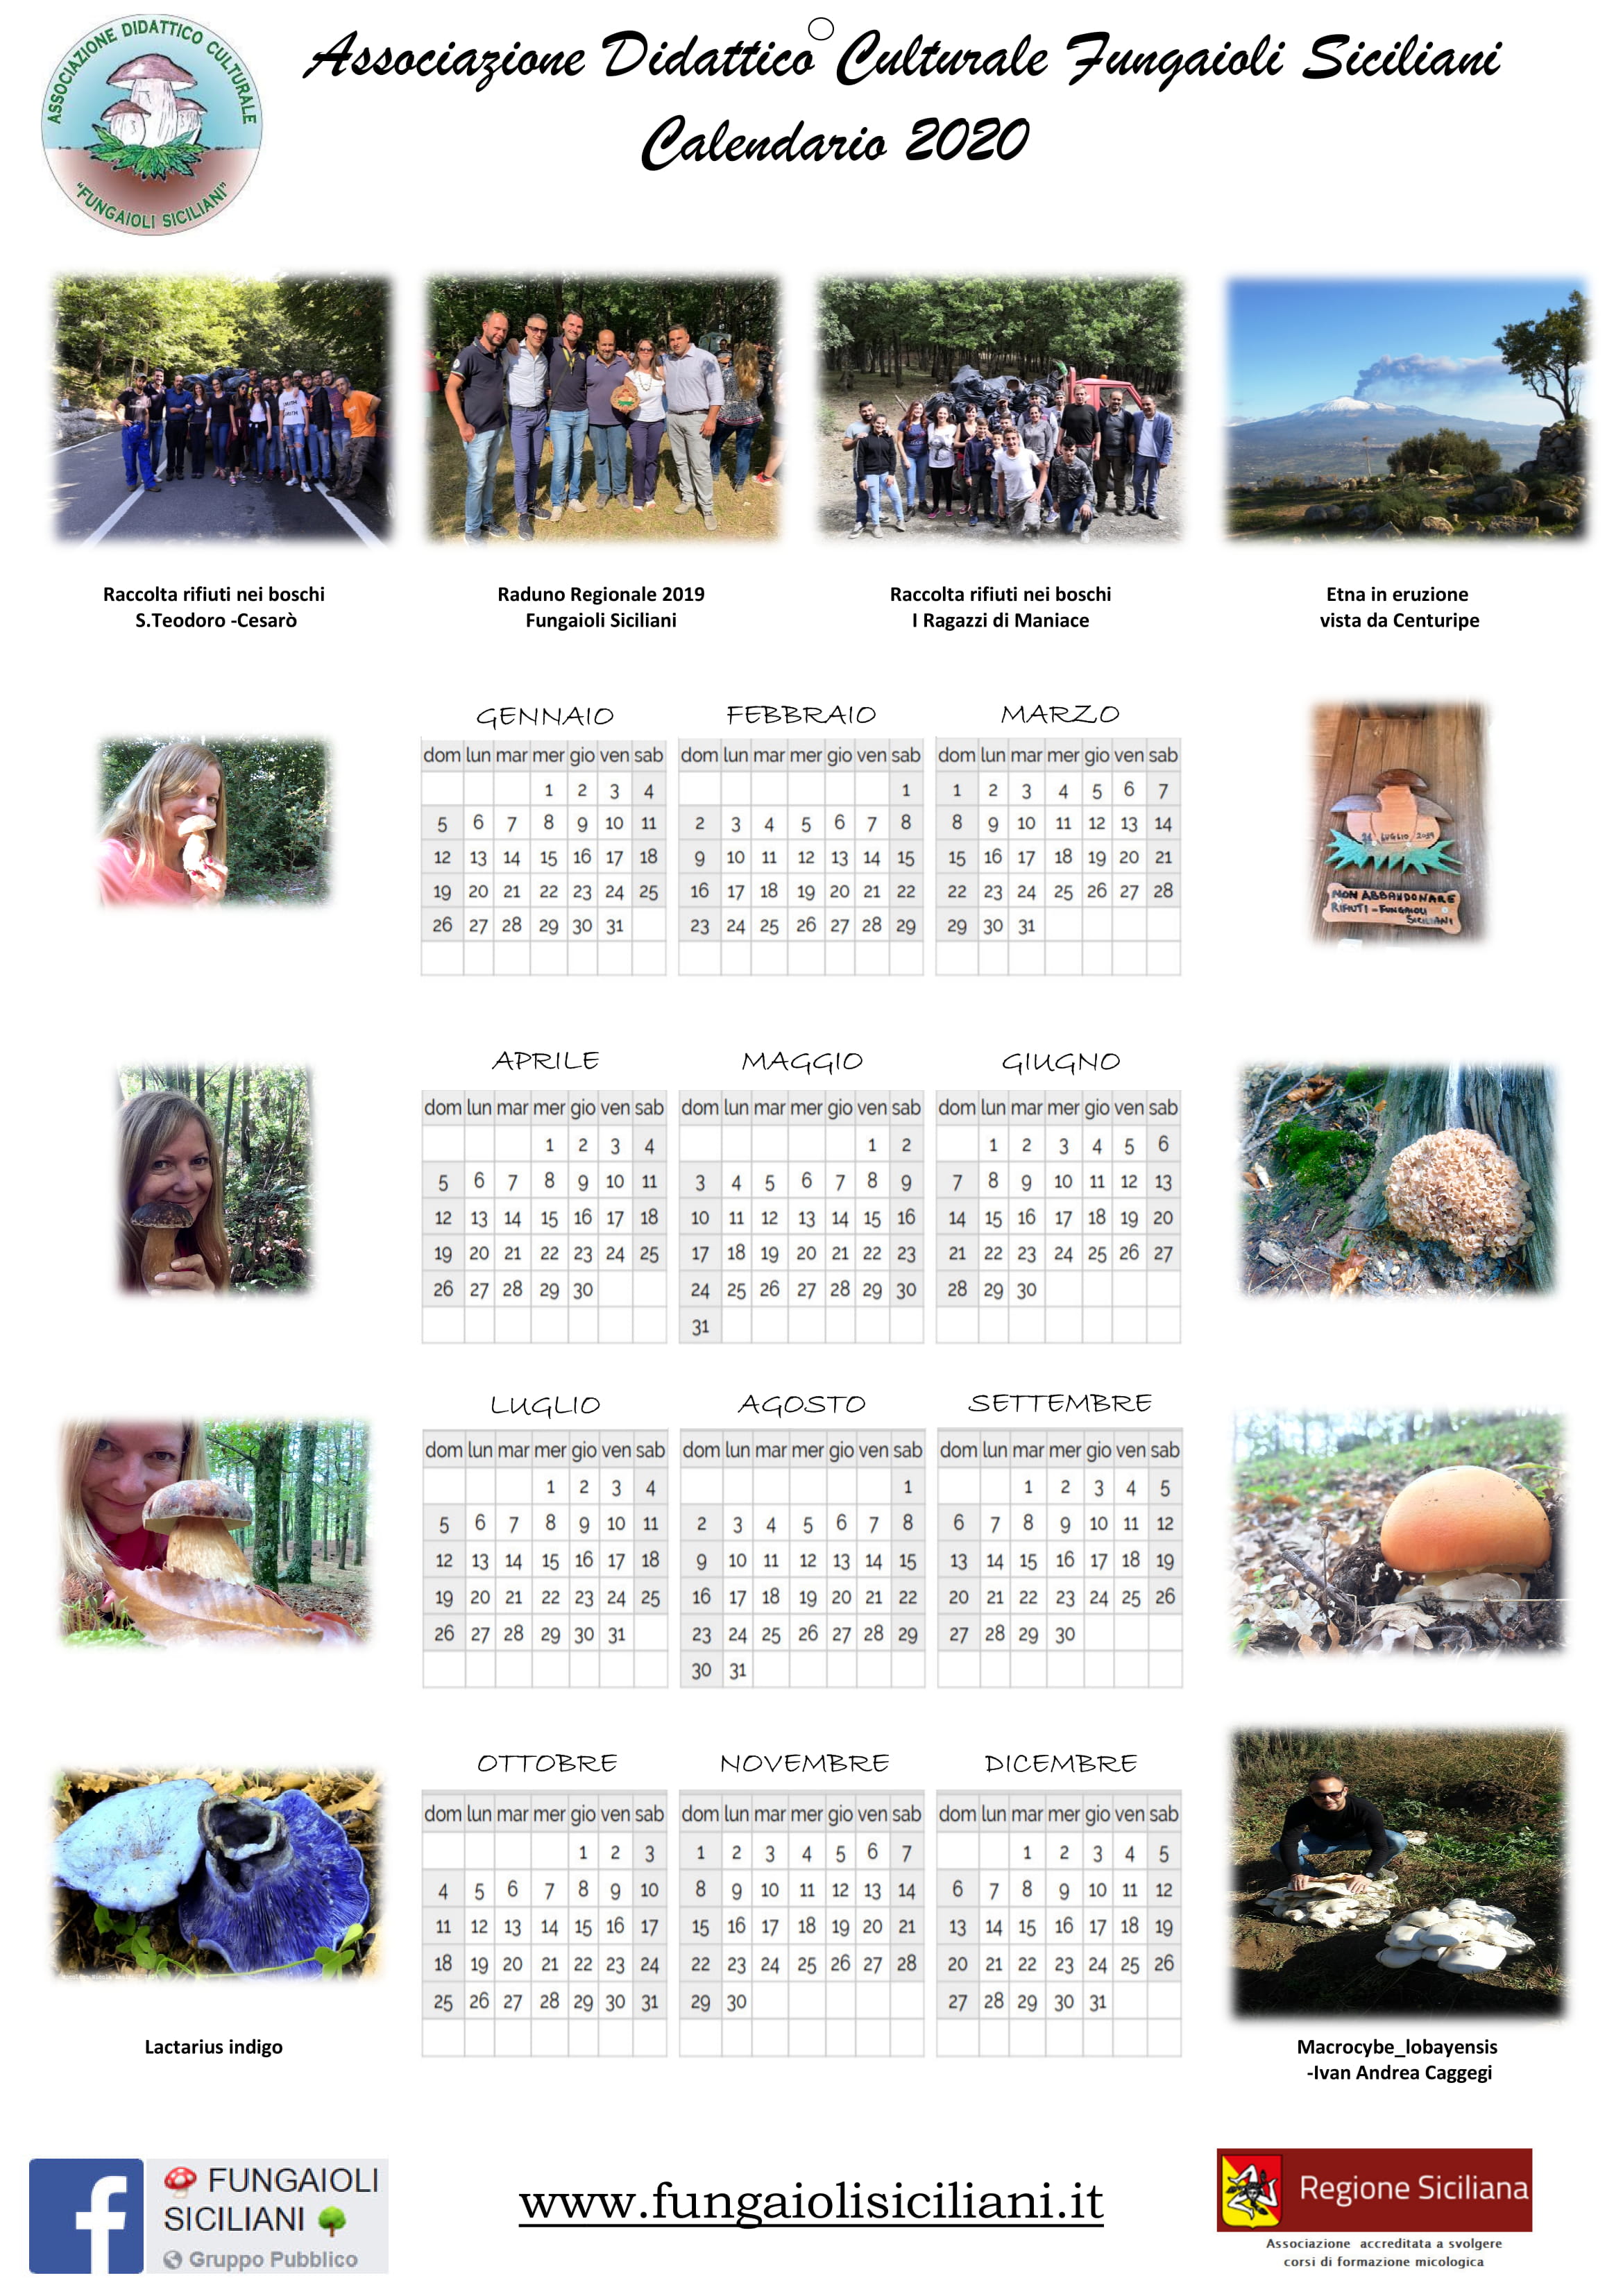 Calendario_2020_-_Rosita_Rugna5-1.jpg - 910,84 kB